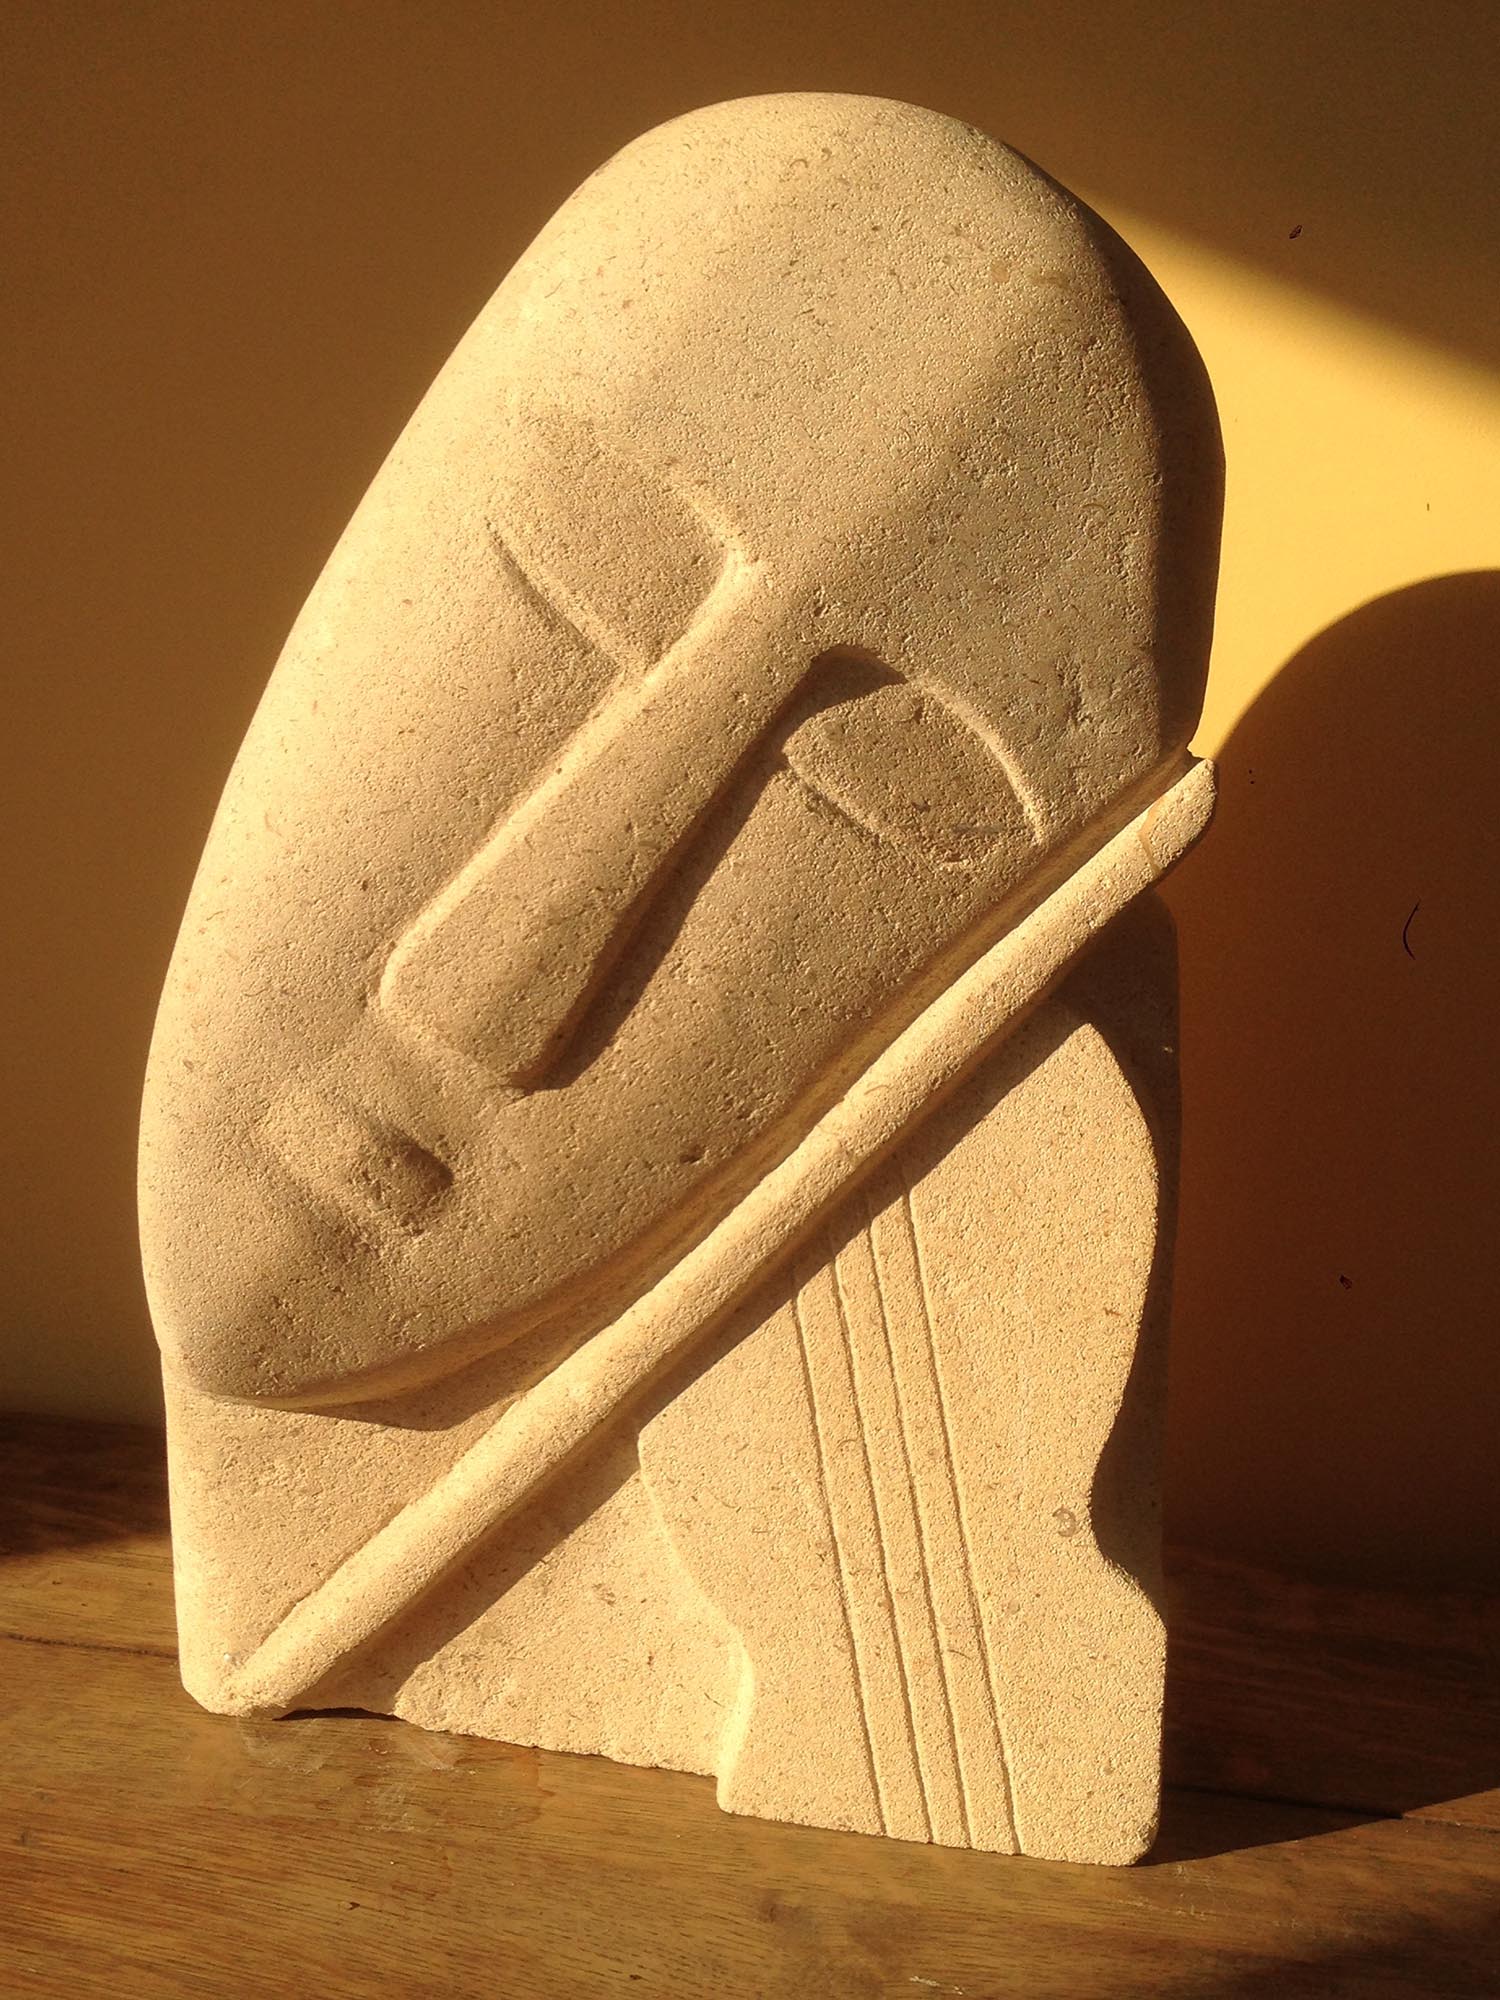 Image 1 of Yehudi sculpture